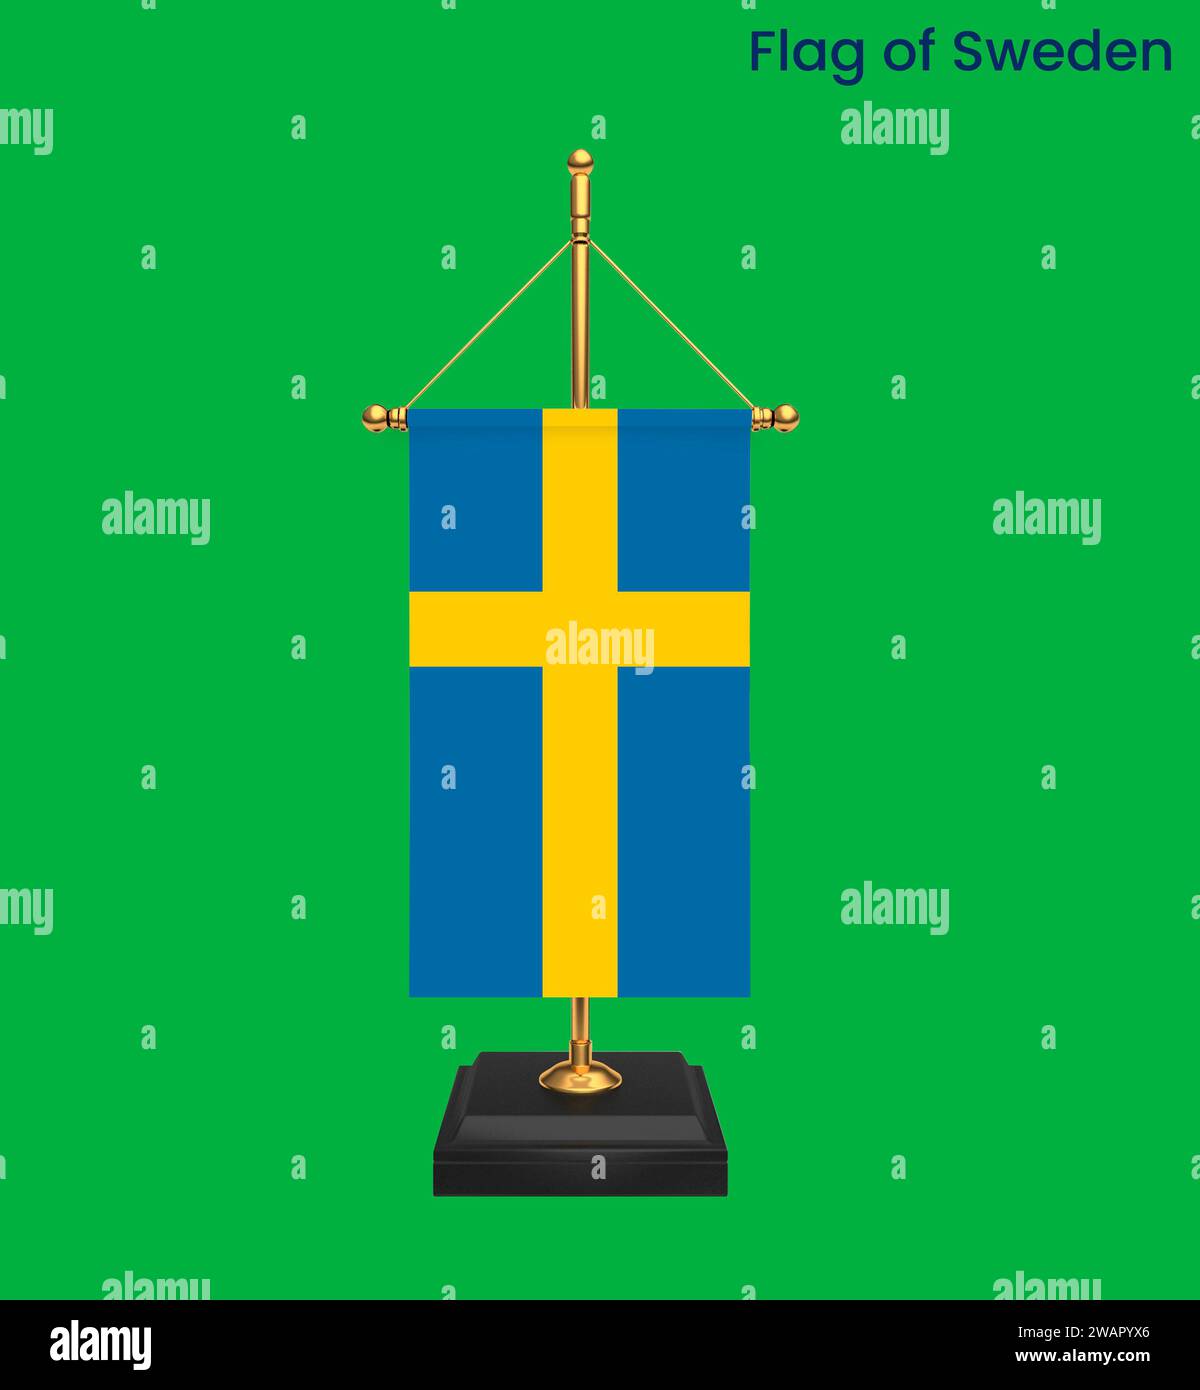 Hochdetaillierte Flagge Schwedens. Schwedische Nationalflagge. Europa. 3D-Abbildung. Stockfoto